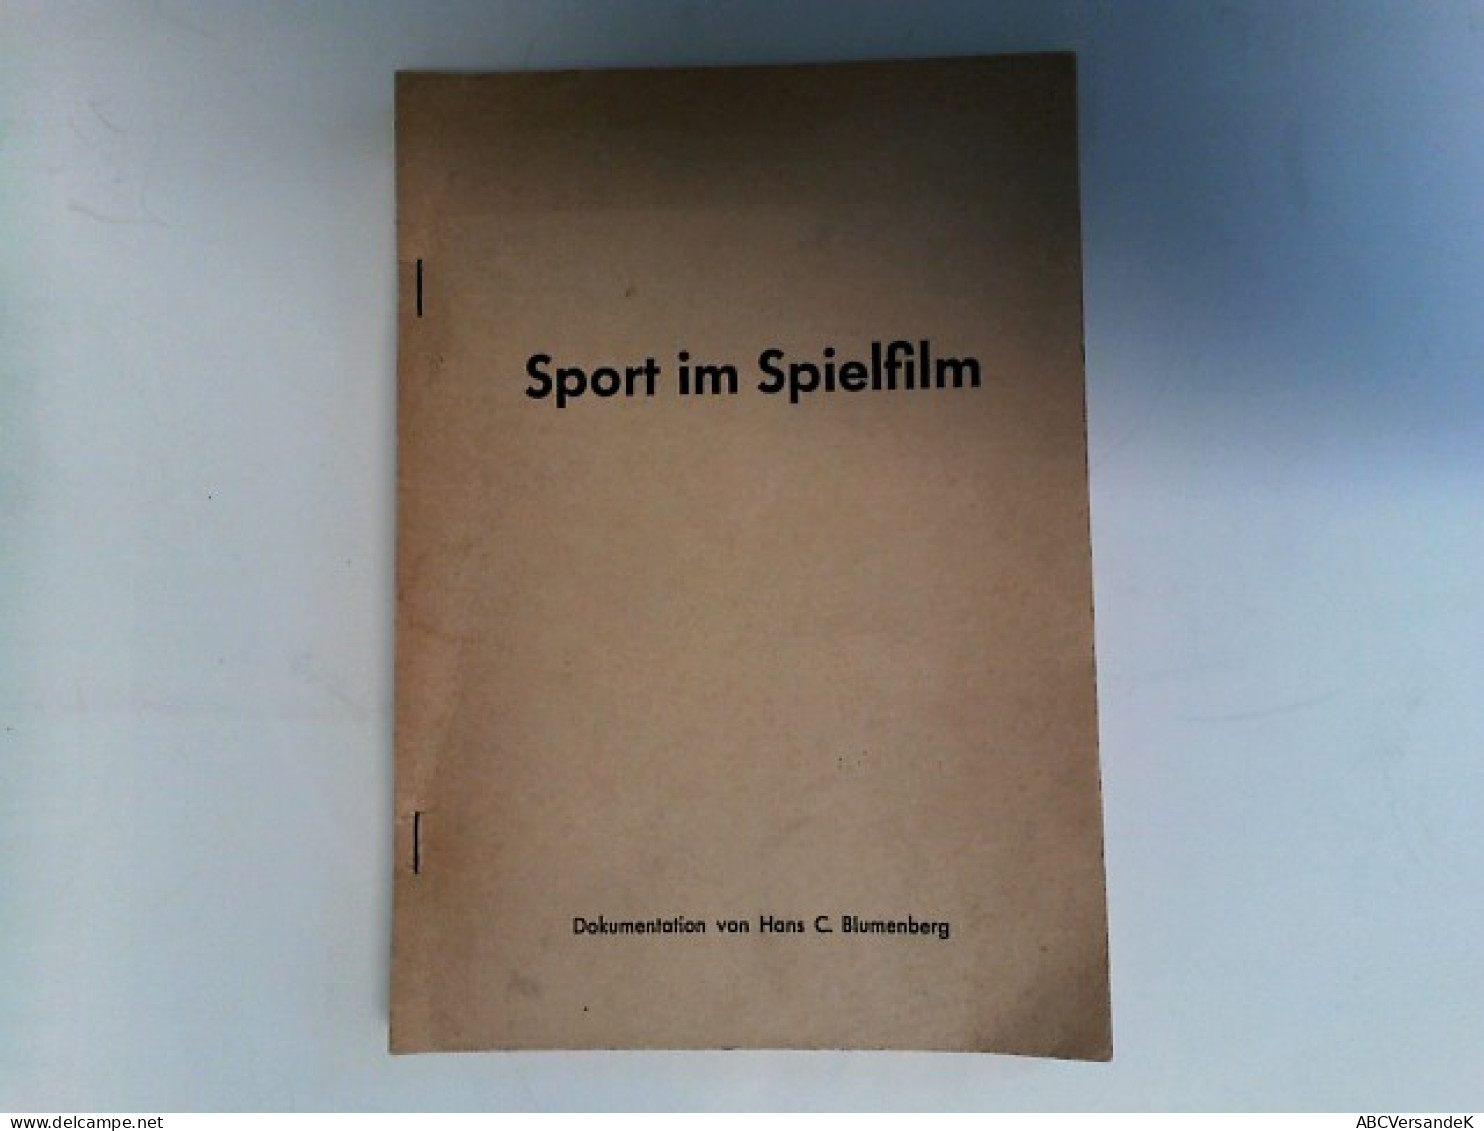 Der Sport Im Spielfilm. Eine Dokumentation. - Sports